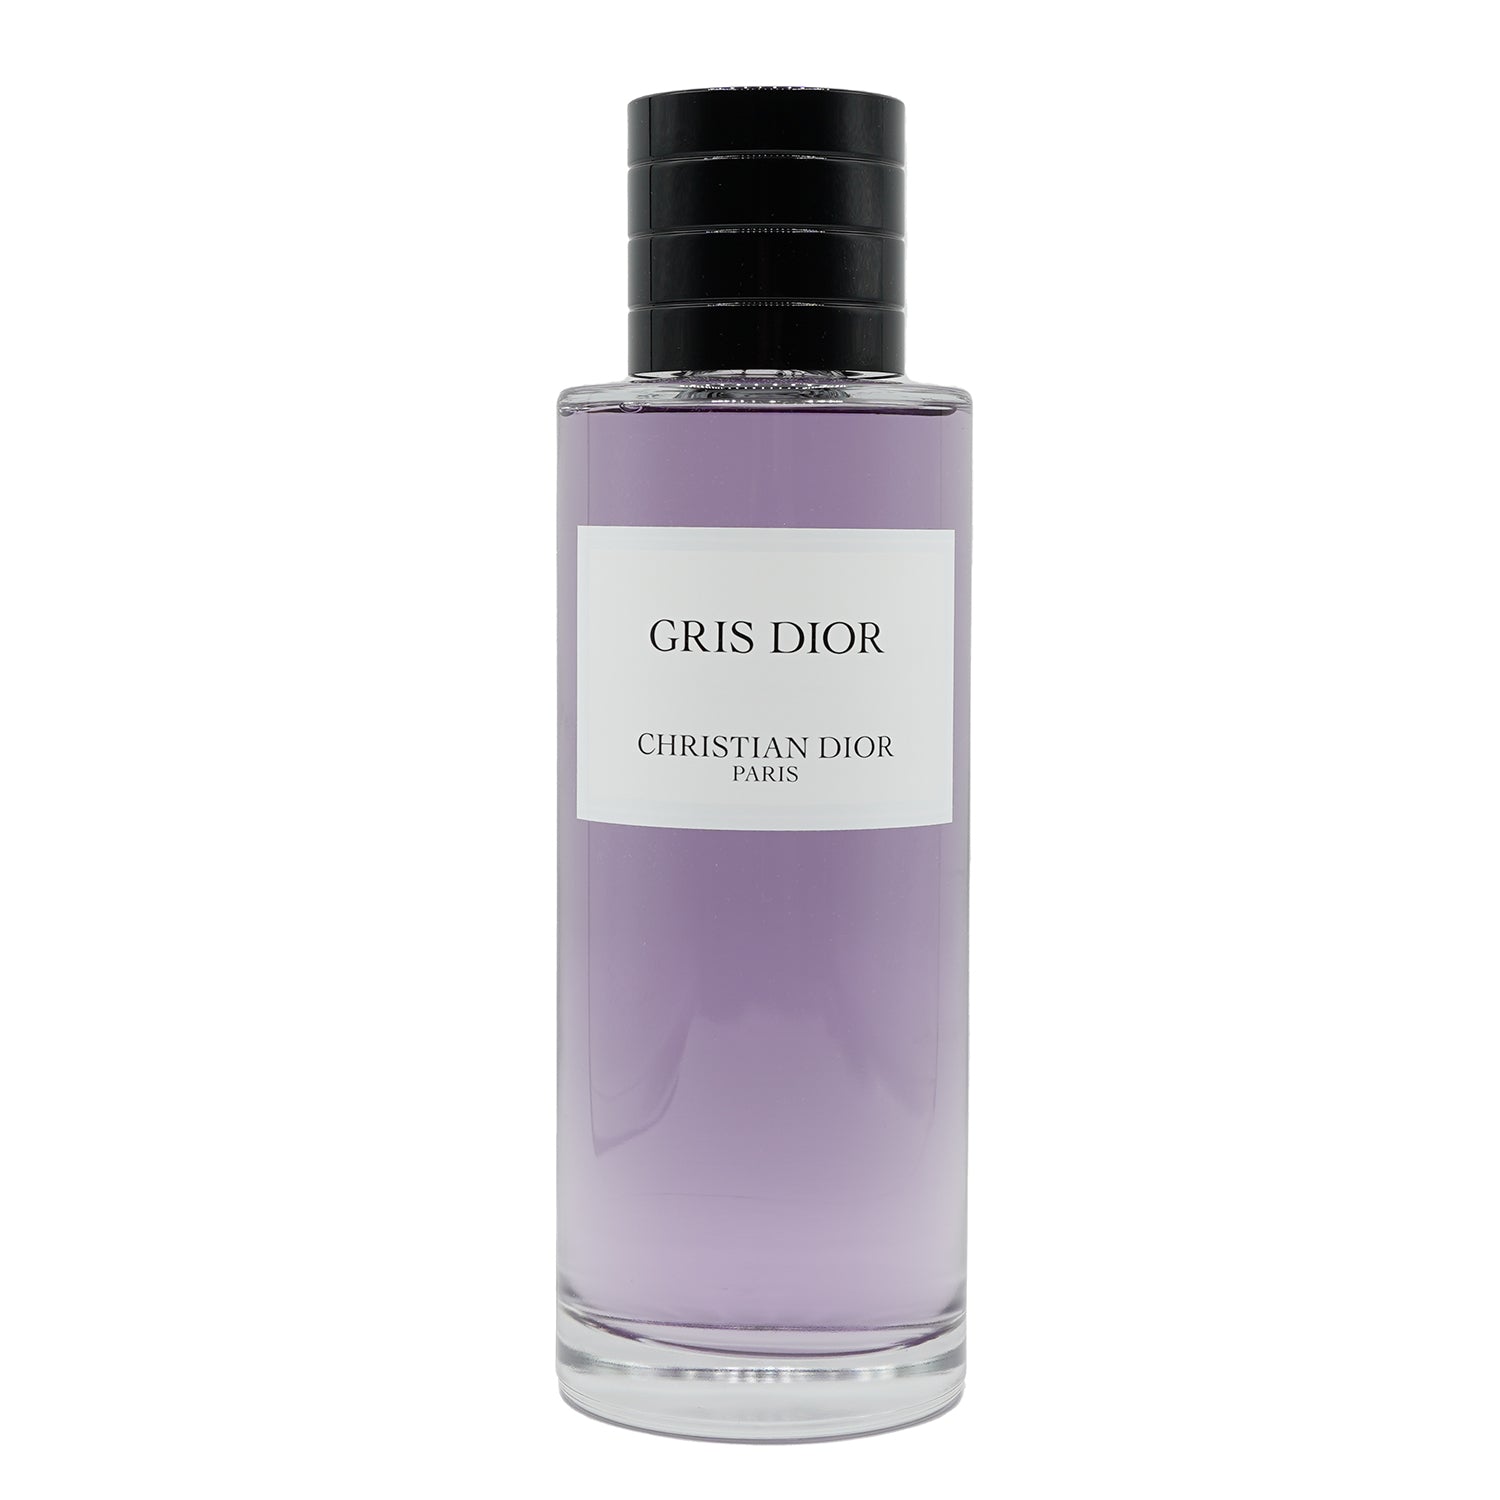 Christian Dior | Gris Dior Abfüllung